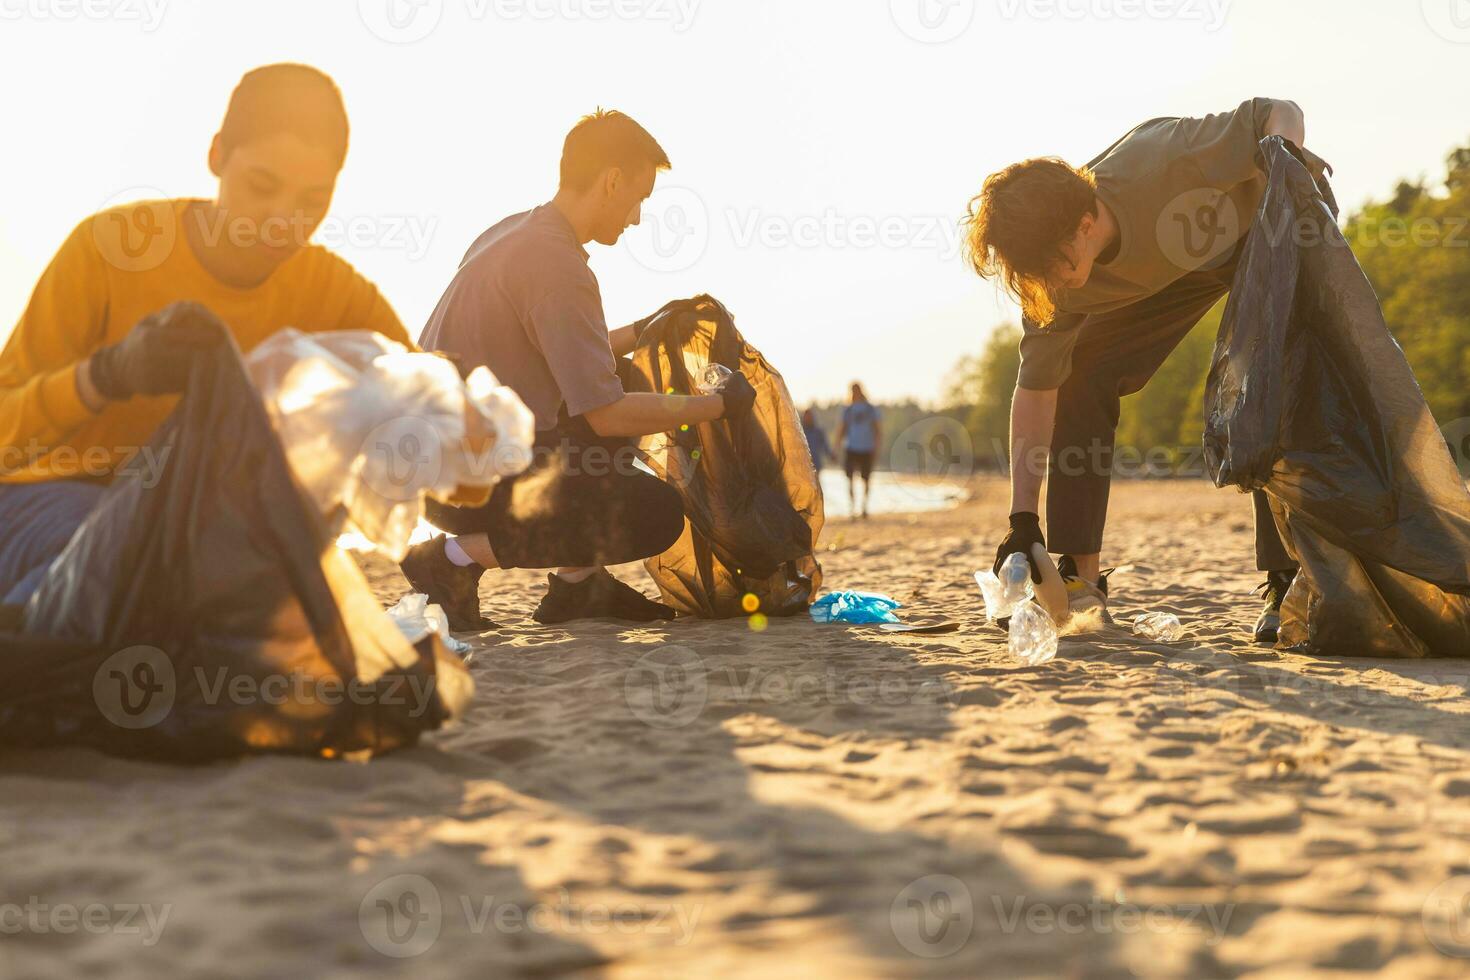 Terre journée. bénévoles militants équipe recueille des ordures nettoyage de plage côtier zone. groupe de gens met Plastique poubelle dans des ordures Sacs sur océan rive. environnement conservation. photo